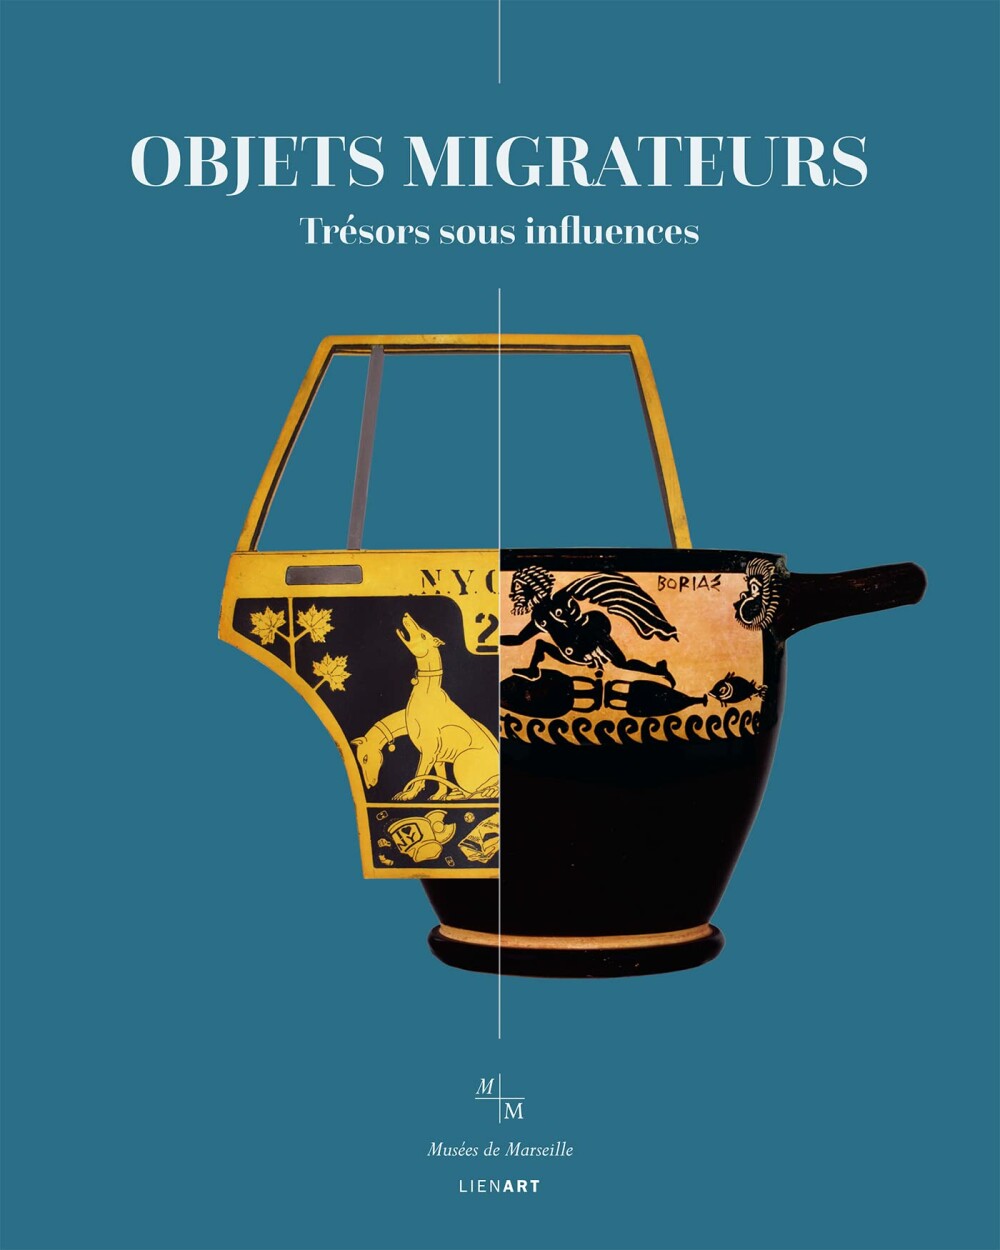 Catalogue Objets migrateurs, trésors sous influence